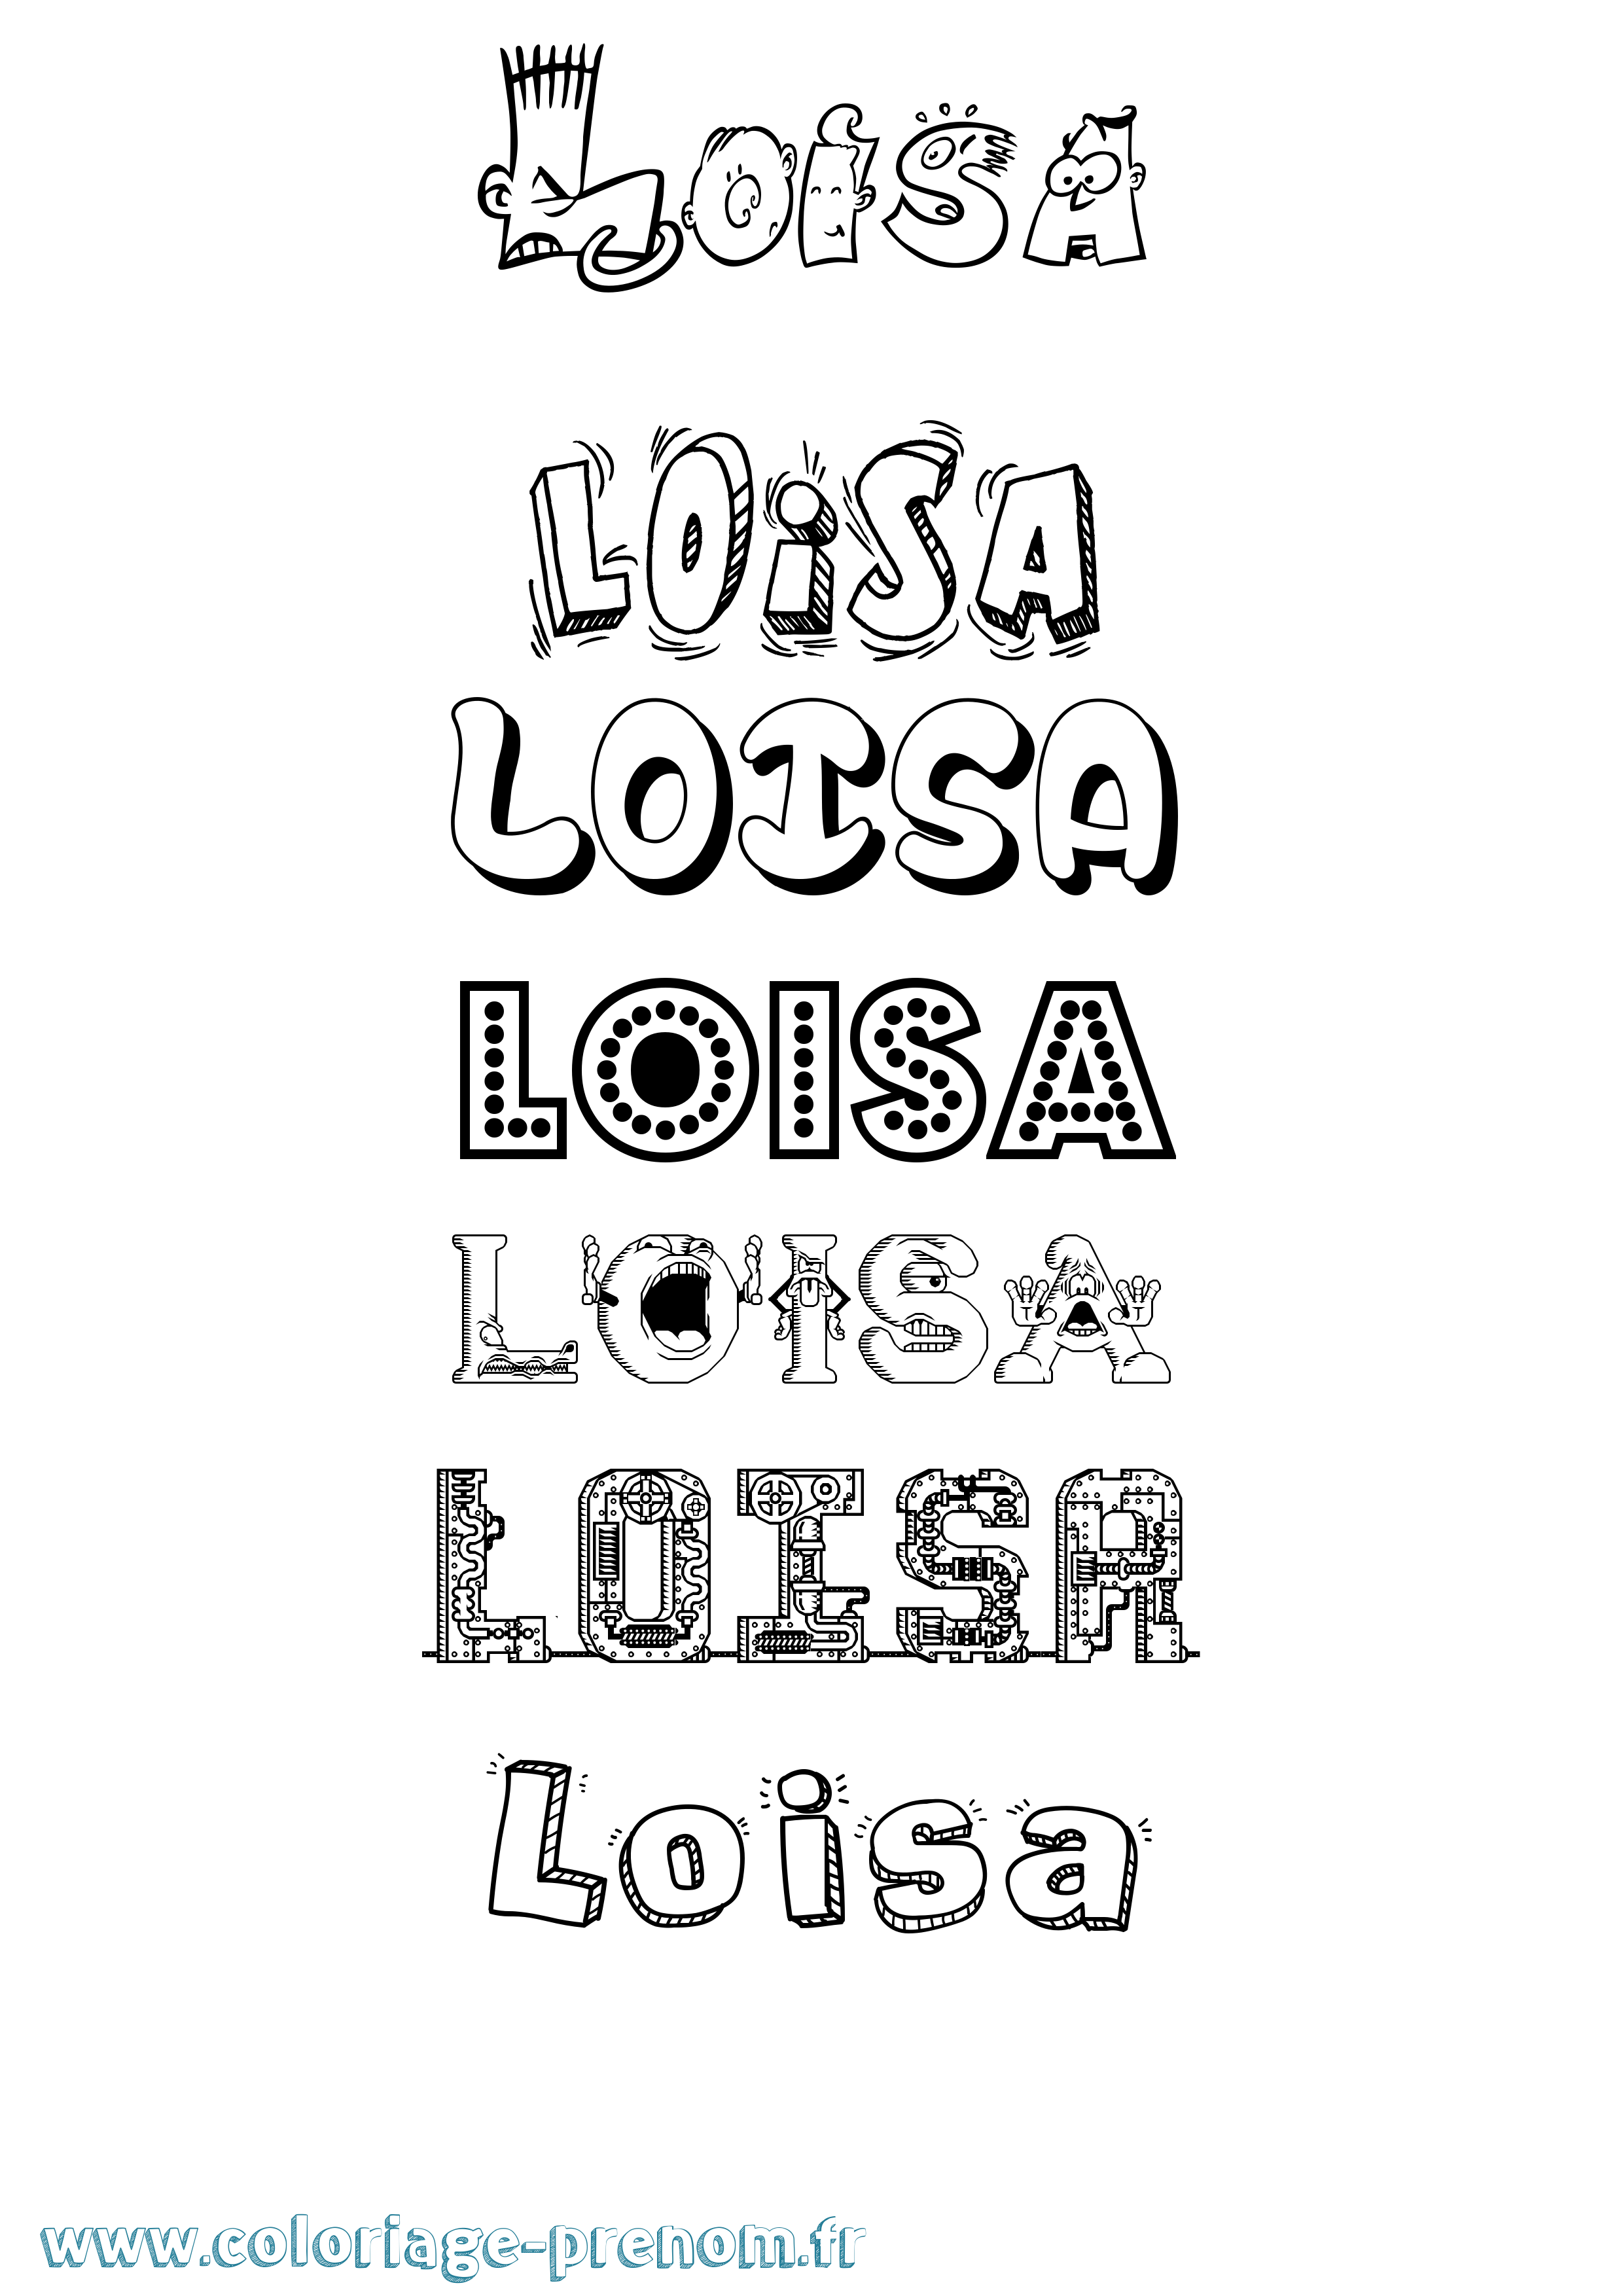 Coloriage prénom Loisa Fun